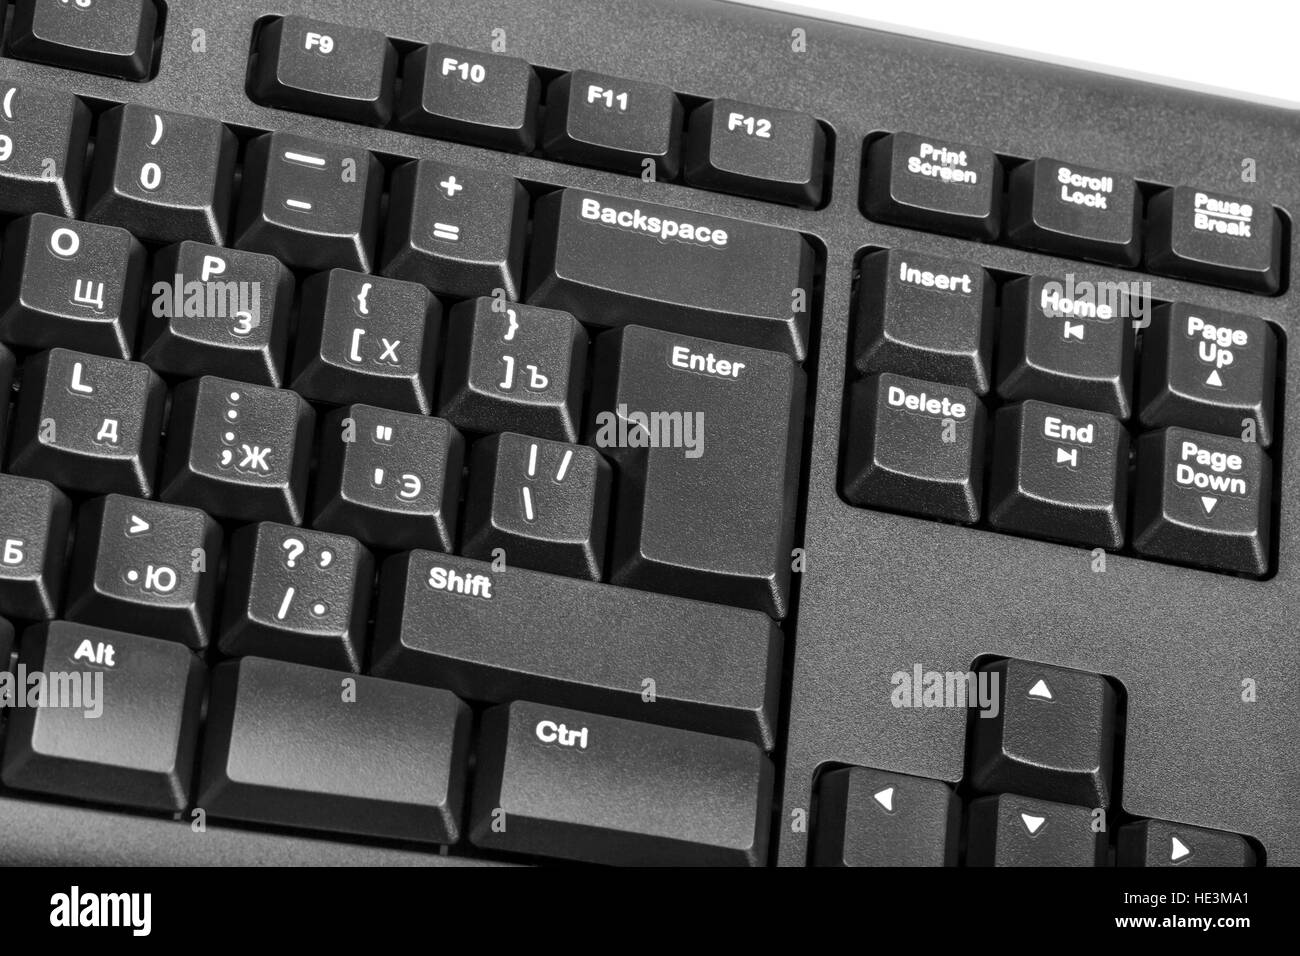 Raccolta elettronica - close-up computer nero con tastiera russa lettera e il tasto enter Foto Stock